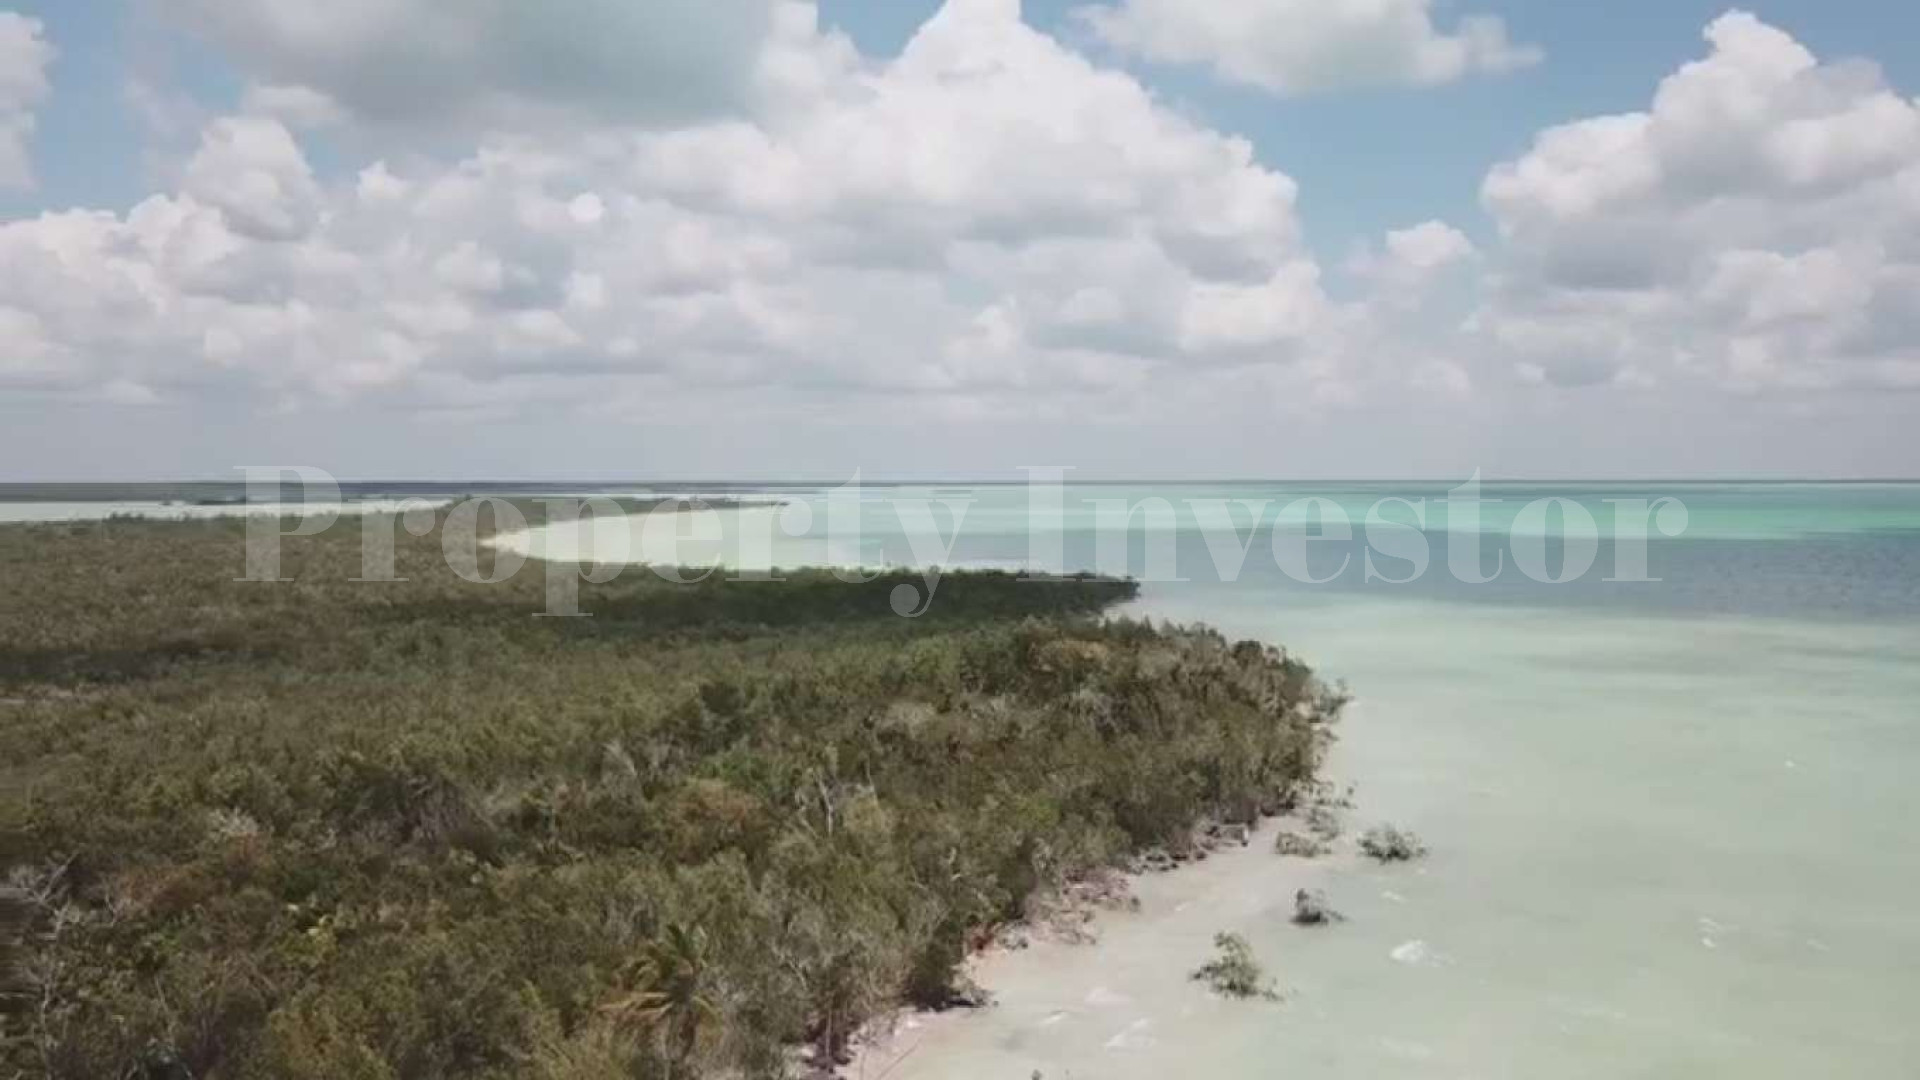 Продается частный остров 129 га с готовым проектом под коммерческое развитие в Мексике